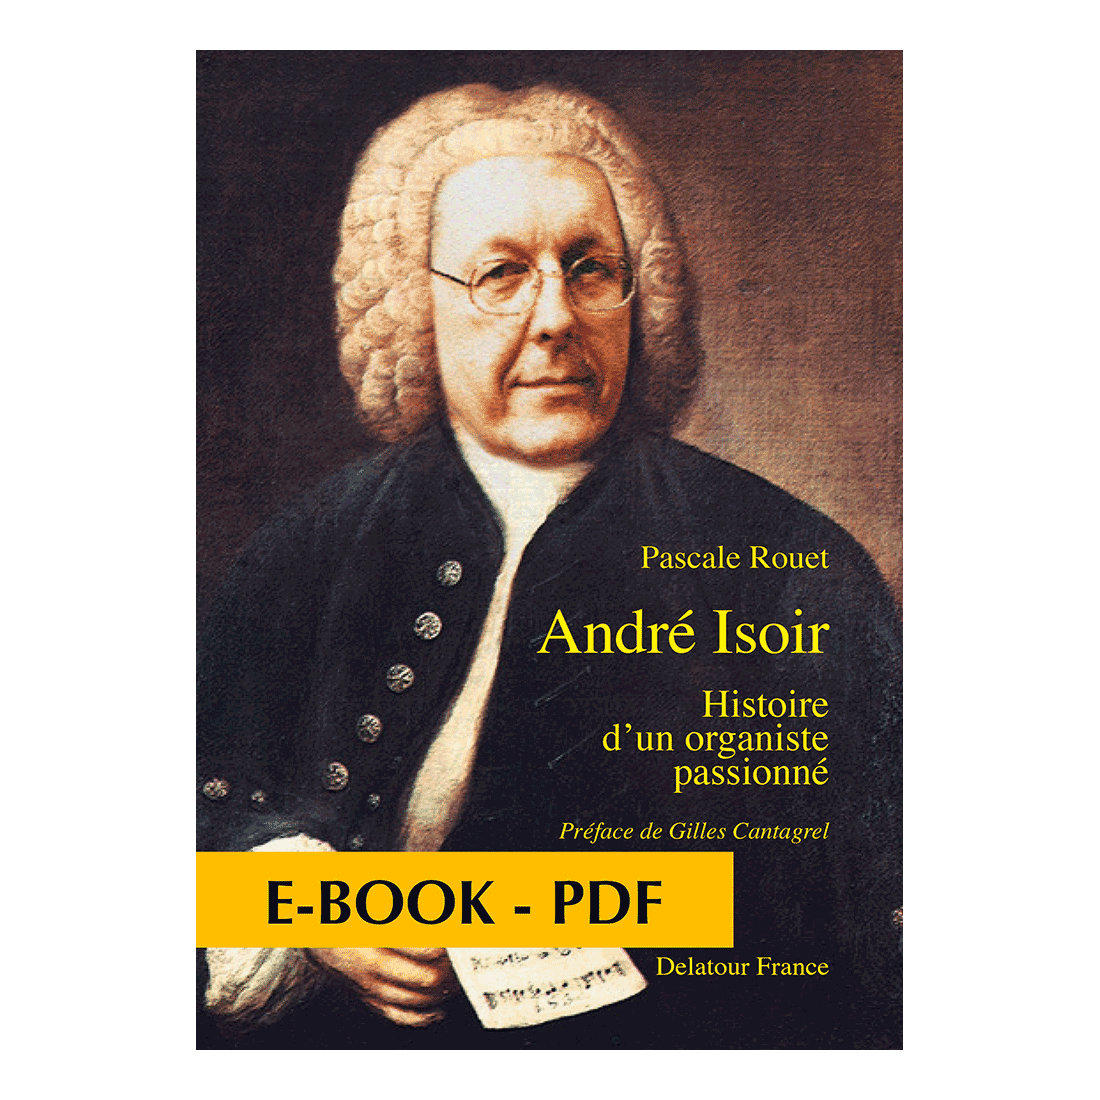 André Isoir, histoire d'un organiste passionné - E-book PDF